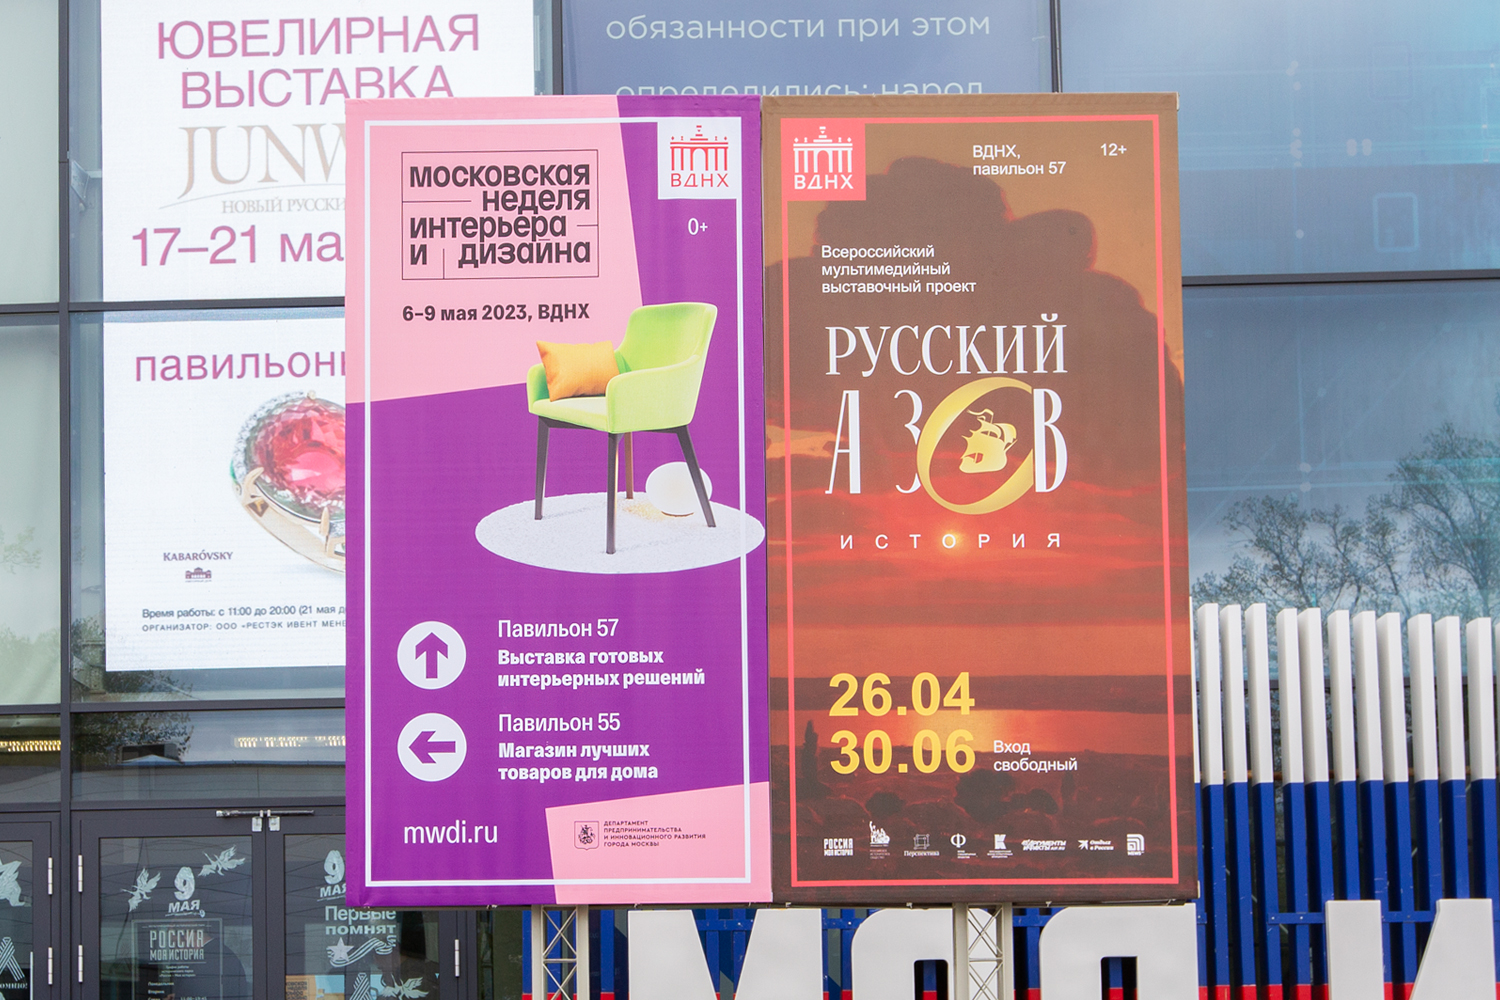 Выставка Московская неделя интерьера и дизайна 2023 на ВДНХ